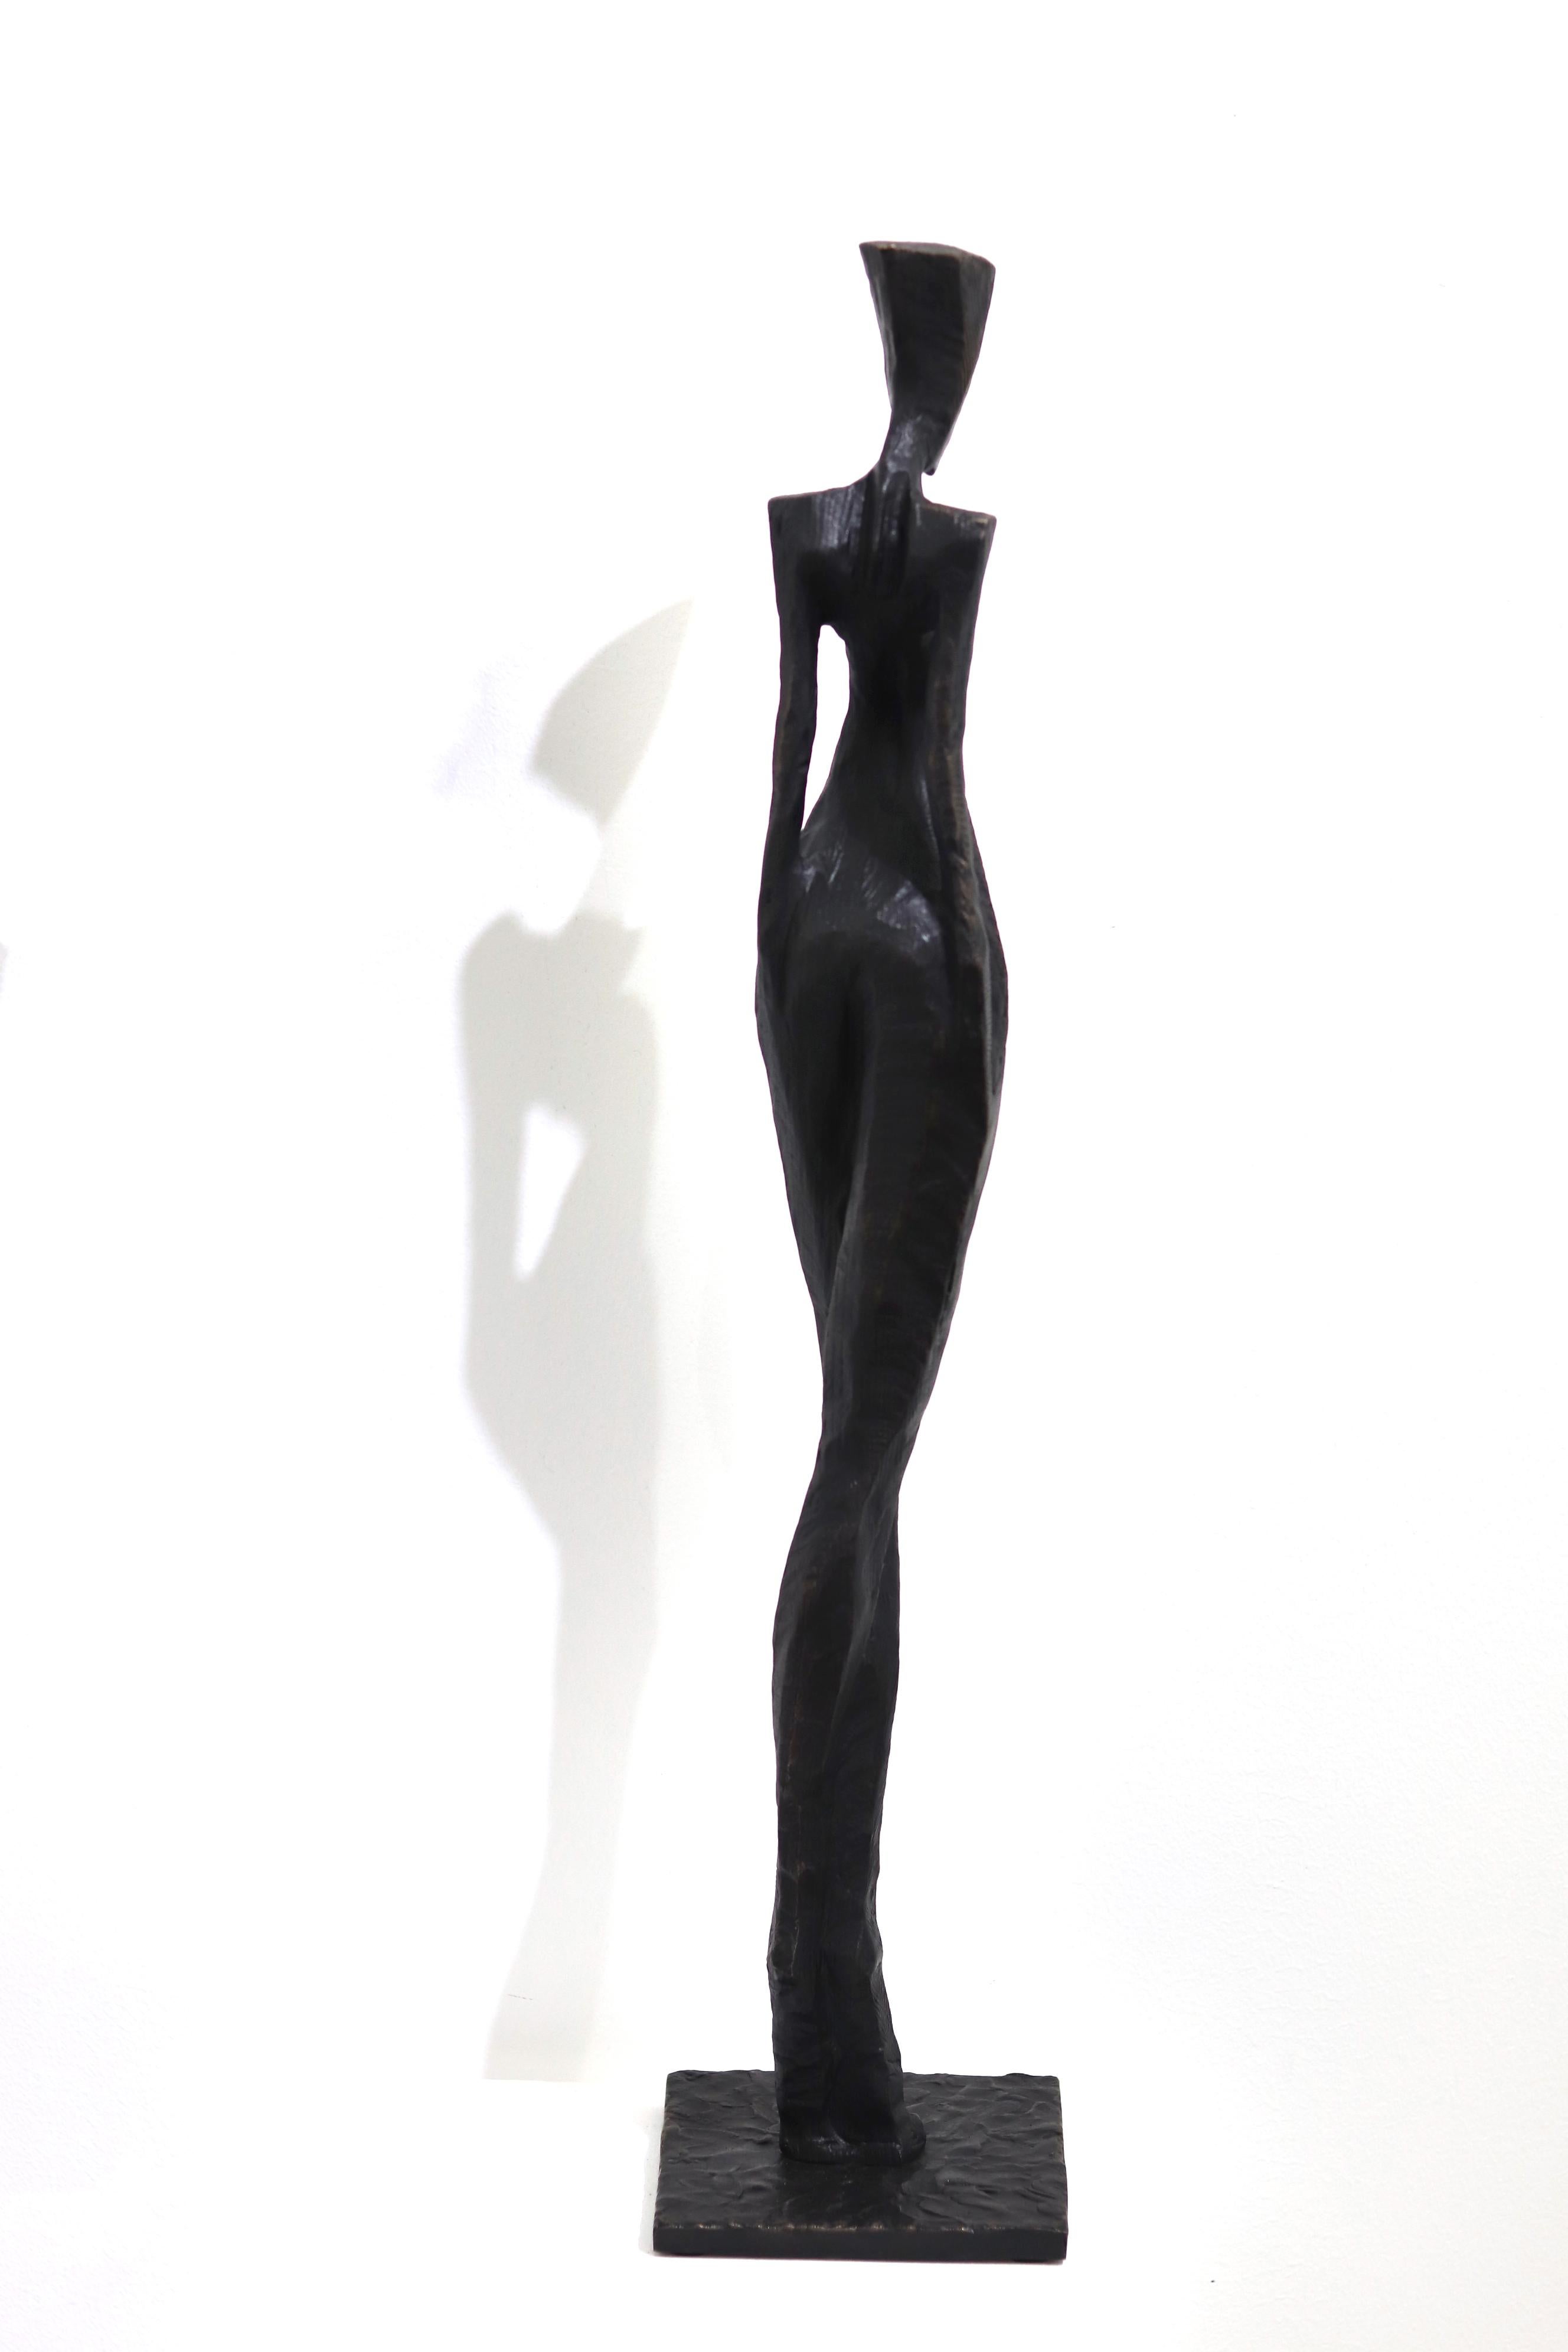 Nathalie - Große hohe figurative moderne abstrakte Skulptur aus massiver Bronze im abstrakten Kubismus (Gold), Nude Sculpture, von Nando Kallweit